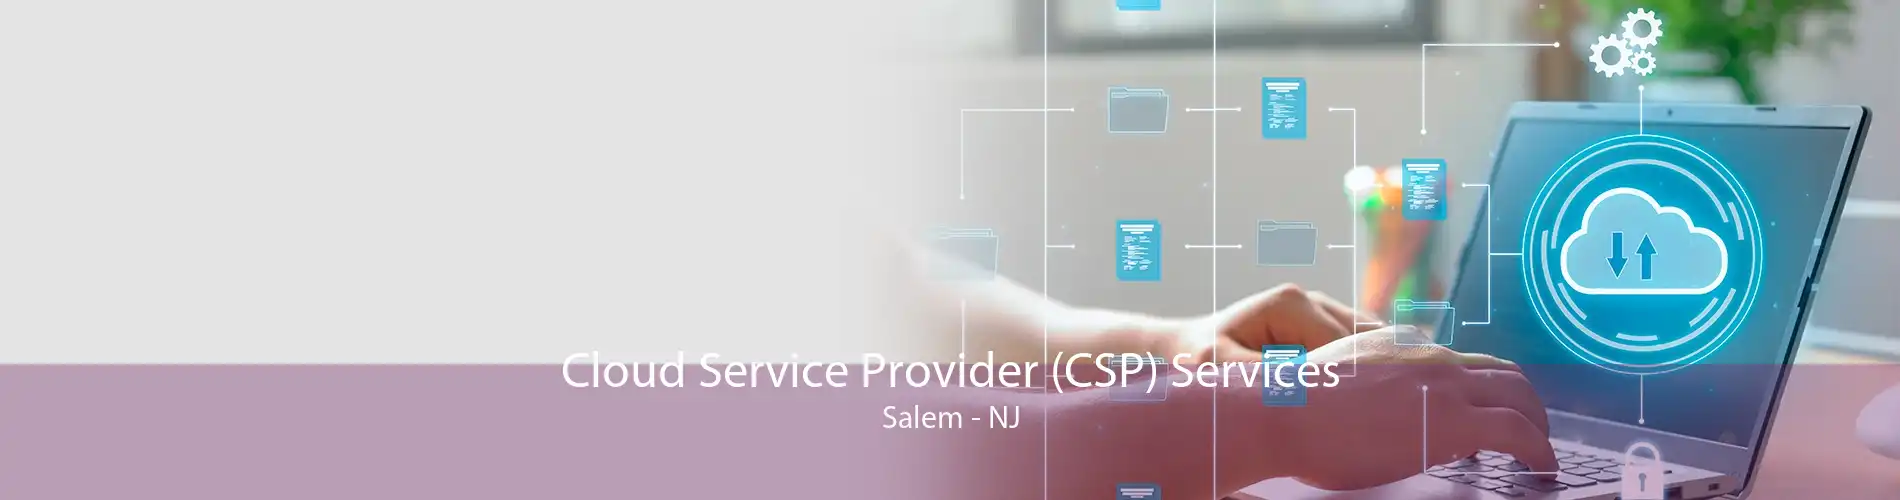 Cloud Service Provider (CSP) Services Salem - NJ